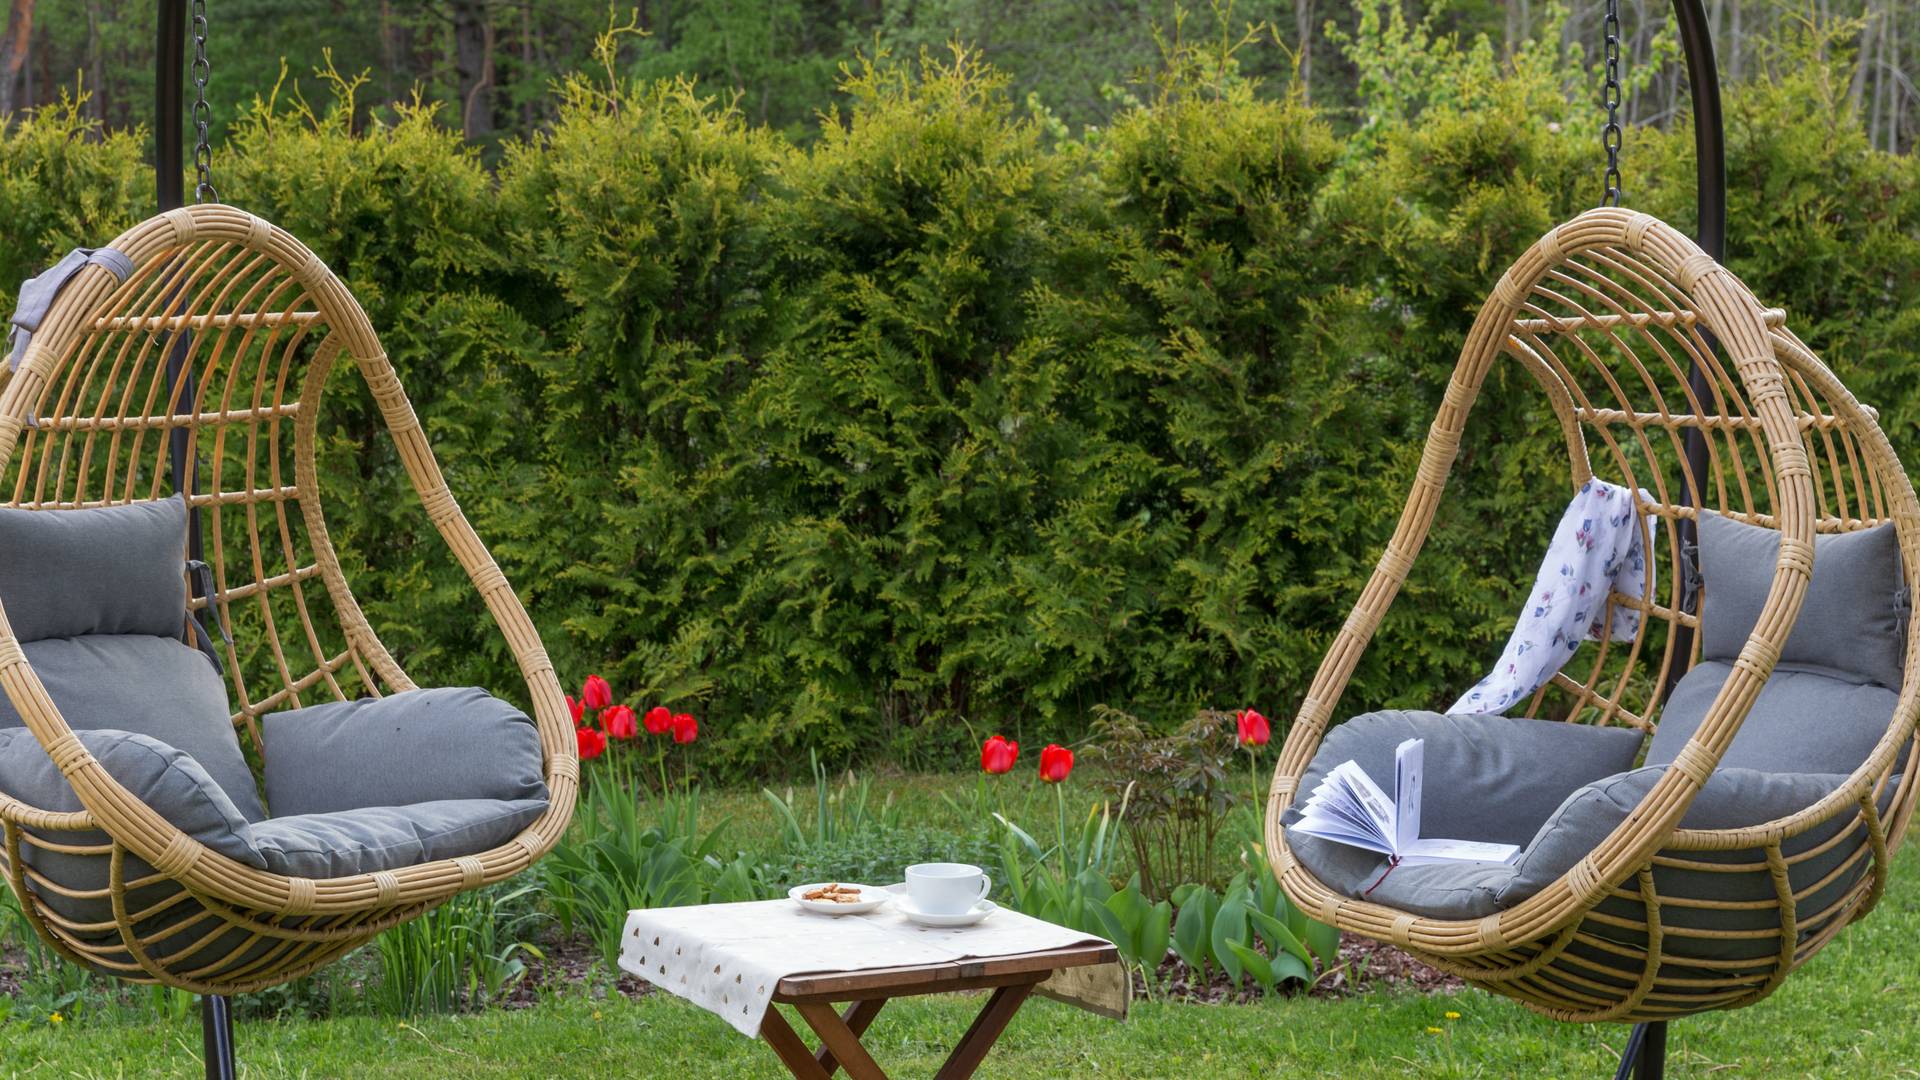 Relaks w ogrodzie — lepsza huśtawka czy fotel wiszący?